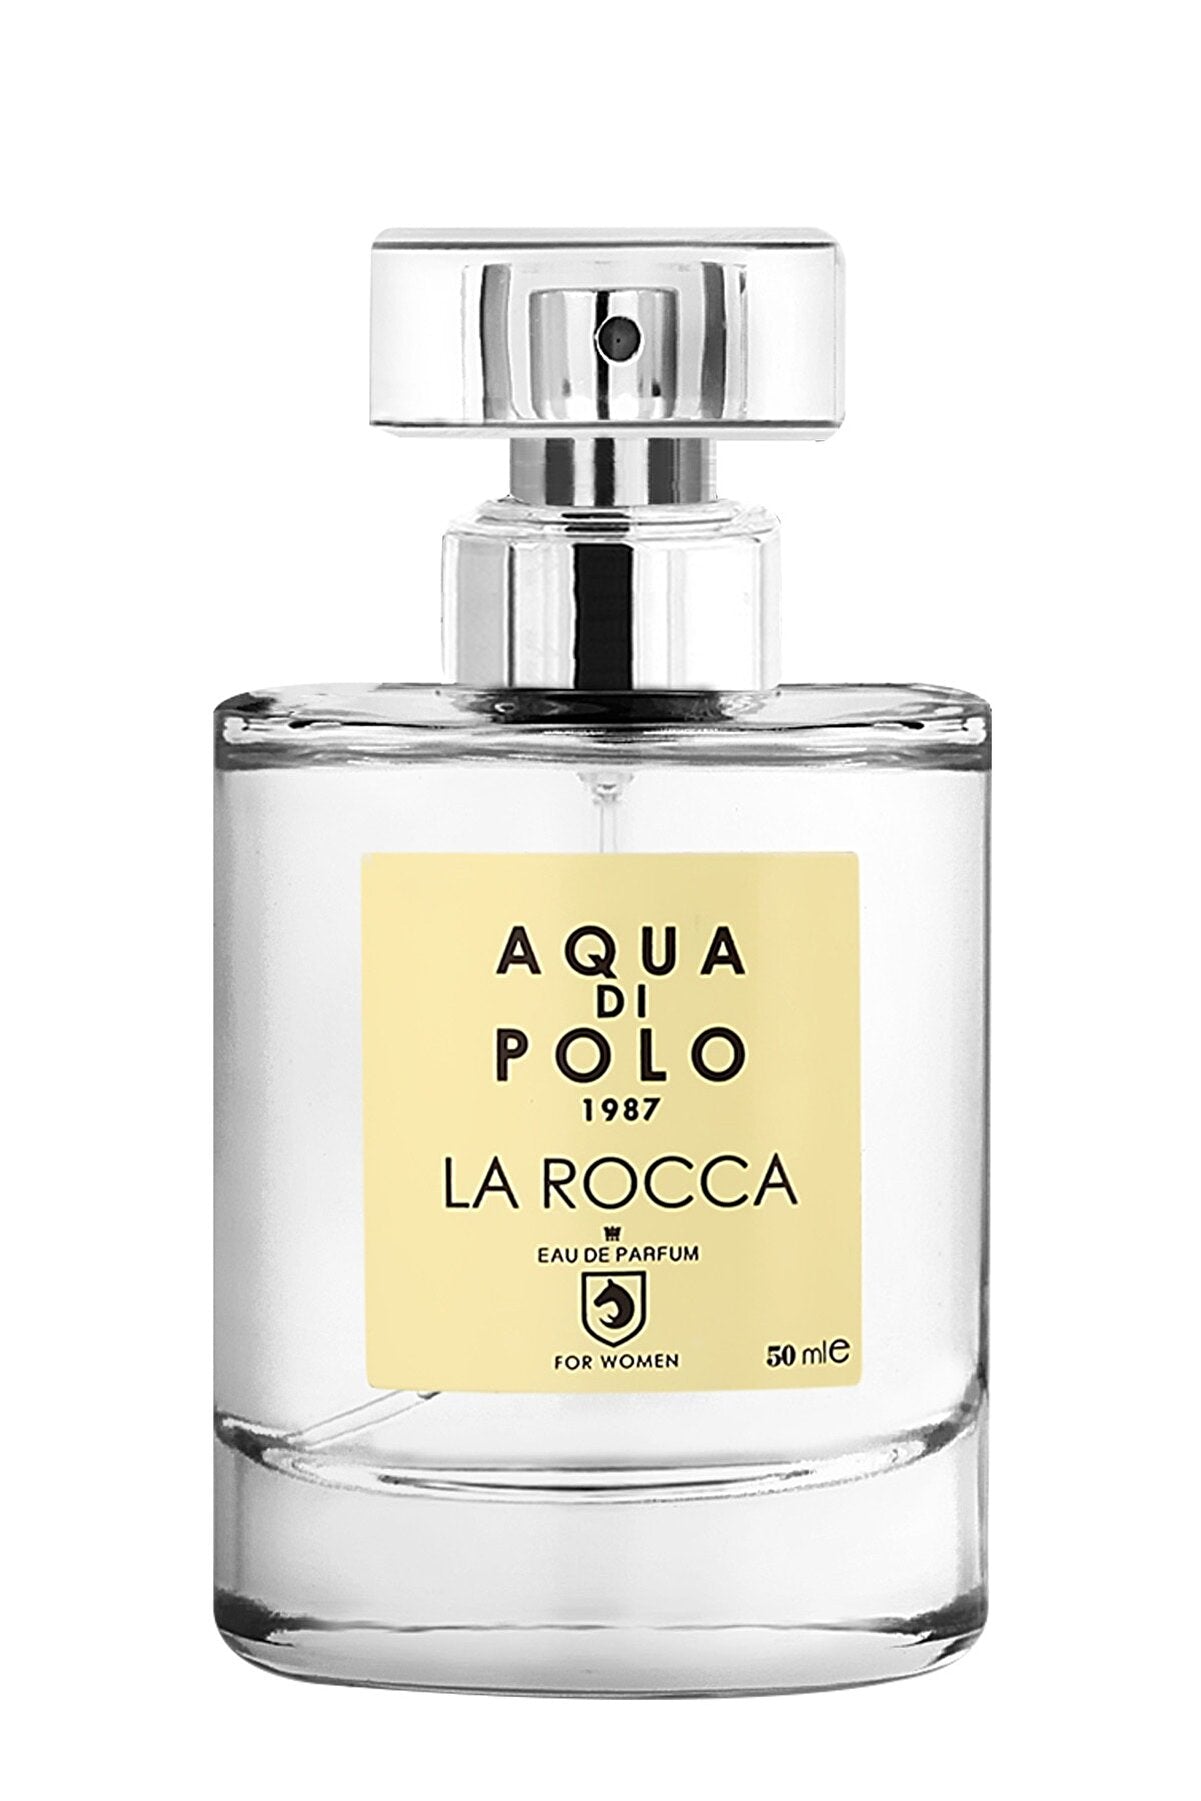 Aqua di Polo 1987 APCN004001 La Rocca 24 ml ve La Rocca 50ml Edp  Kadın Parfümü 2'li Parfüm Seti STCC021153